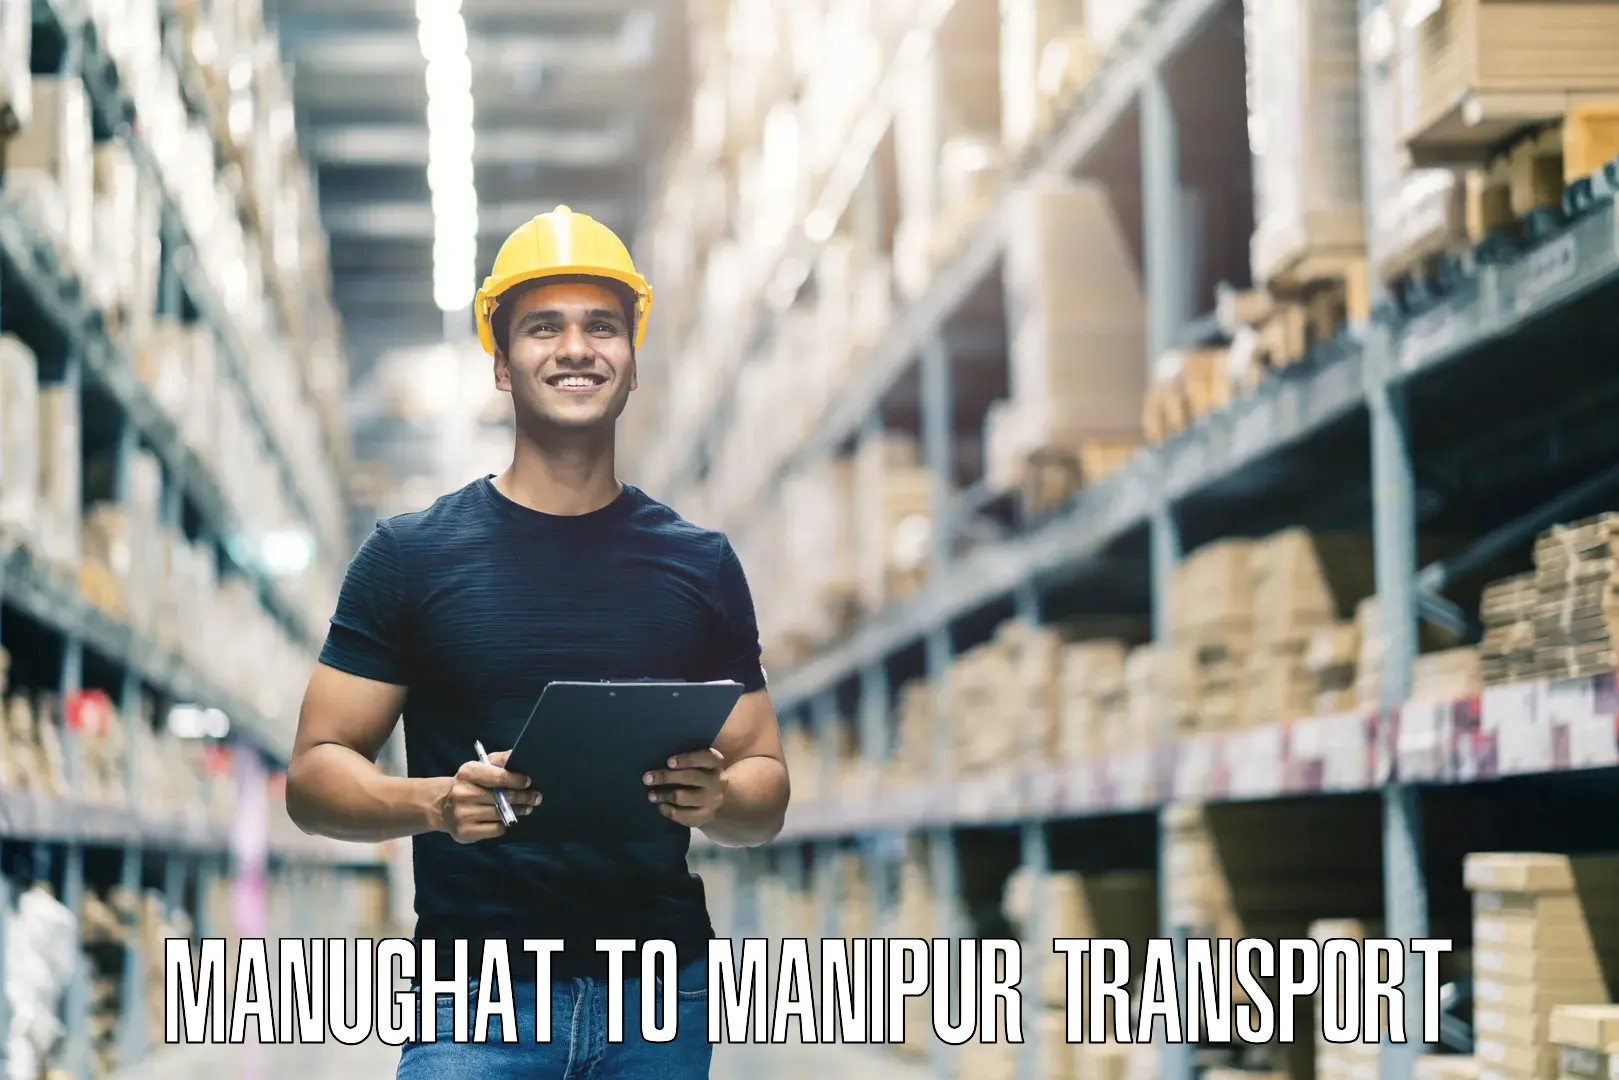 Lorry transport service Manughat to Kanti